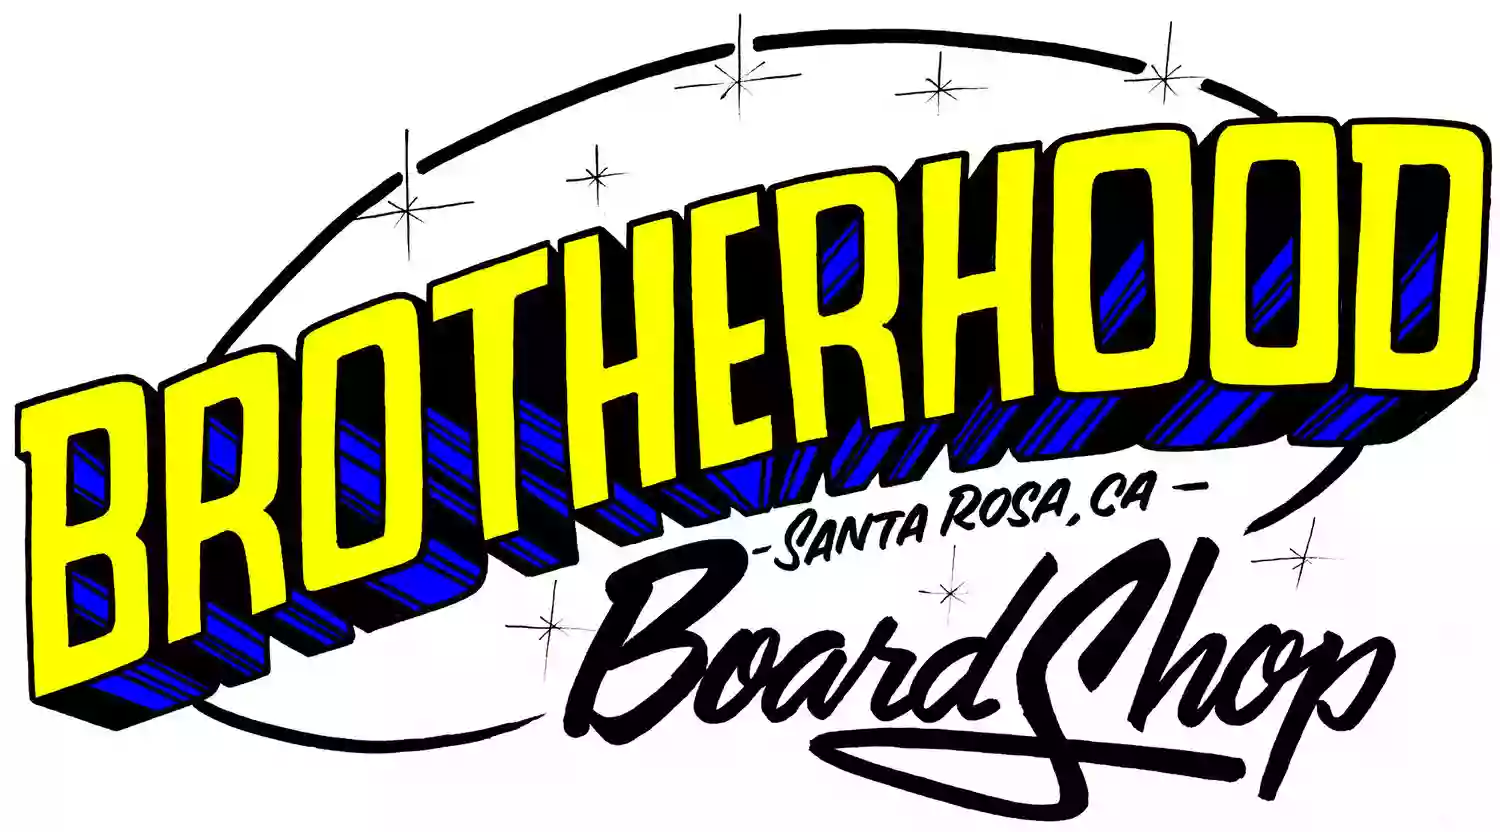 Brotherhood Board Shop